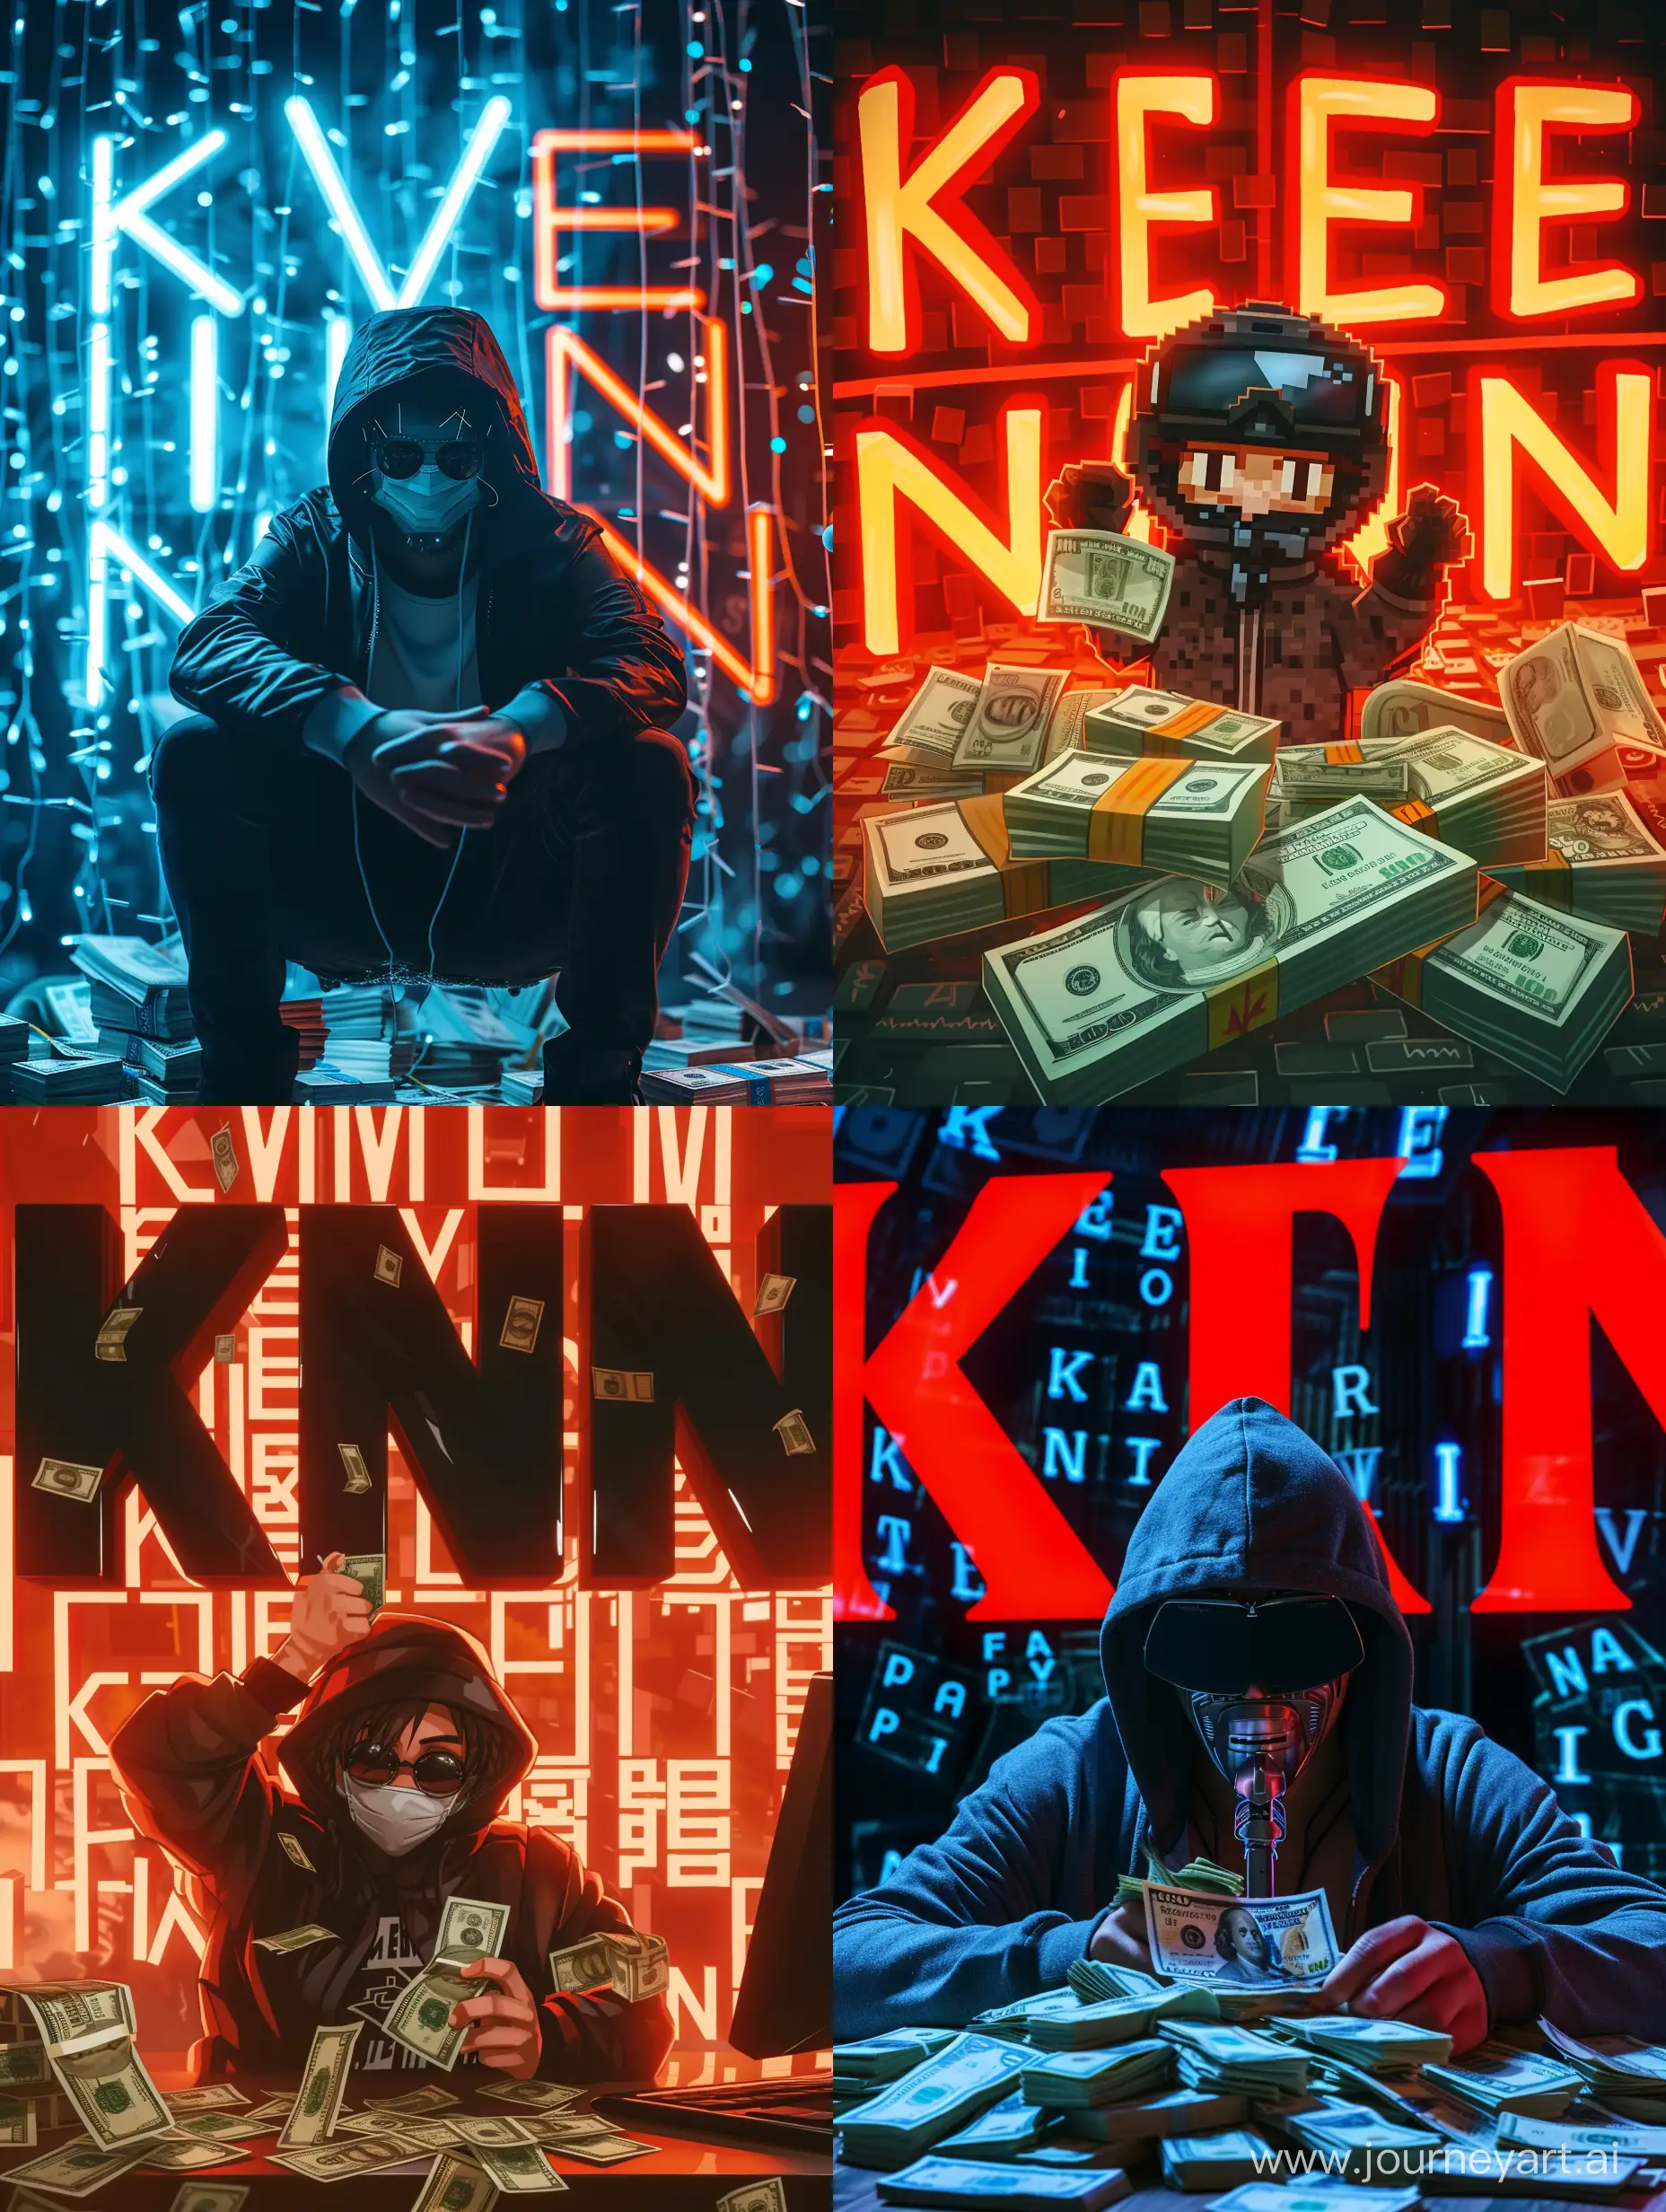 картинка с персонажем хакер, много денег, фон большие буквы k,e,v,i,n